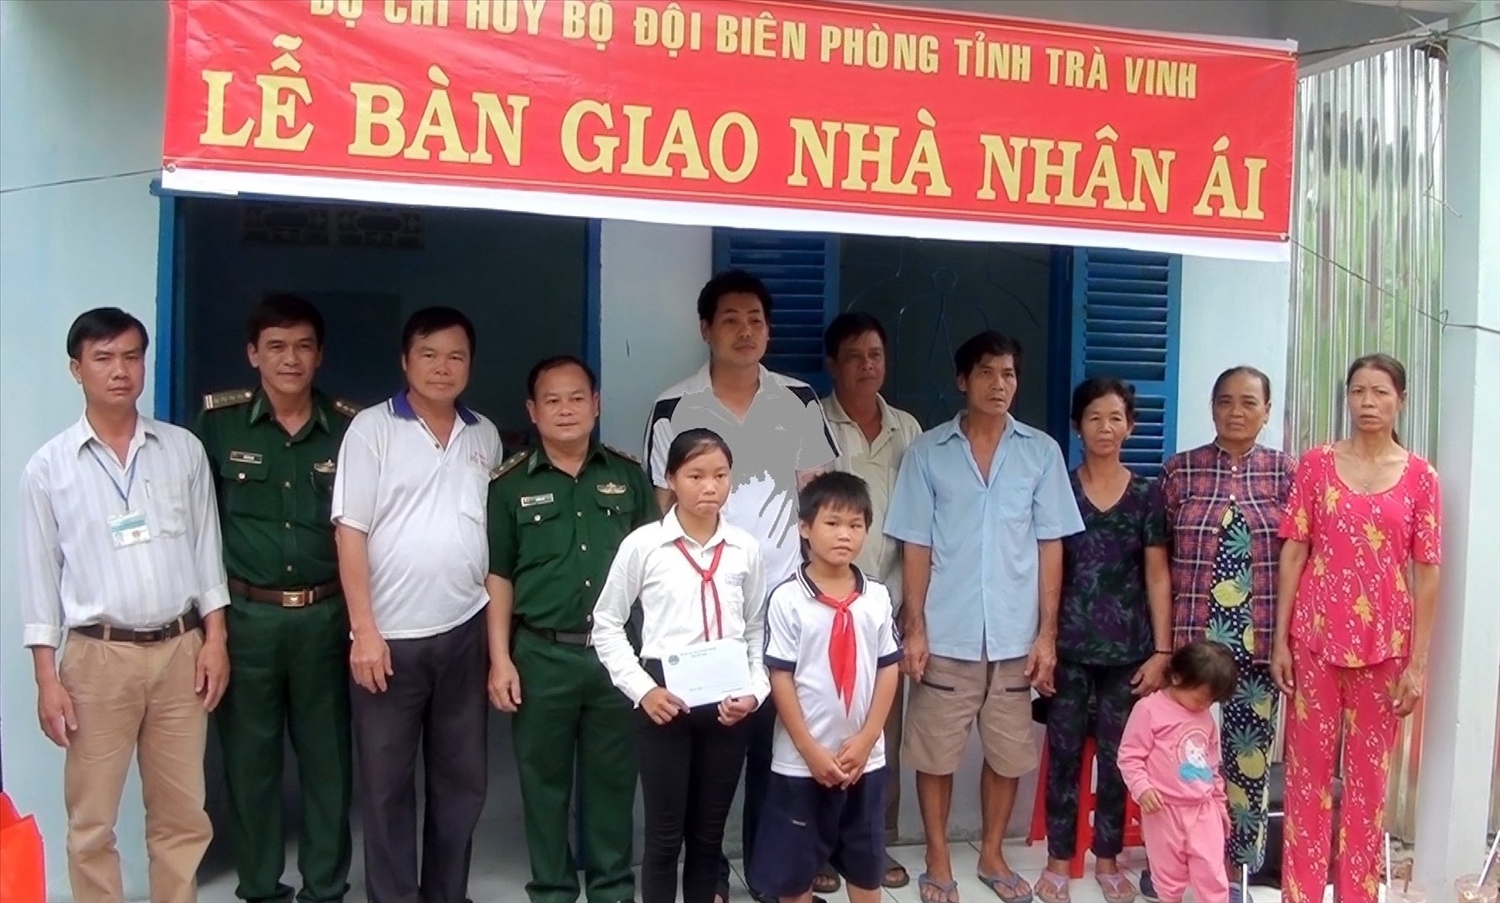 BĐBP tỉnh Trà Vinh trao nhà nhân ái và học bổng " Nâng bước em đến trường " cho hộ đồng bào dân tộc Khmer 